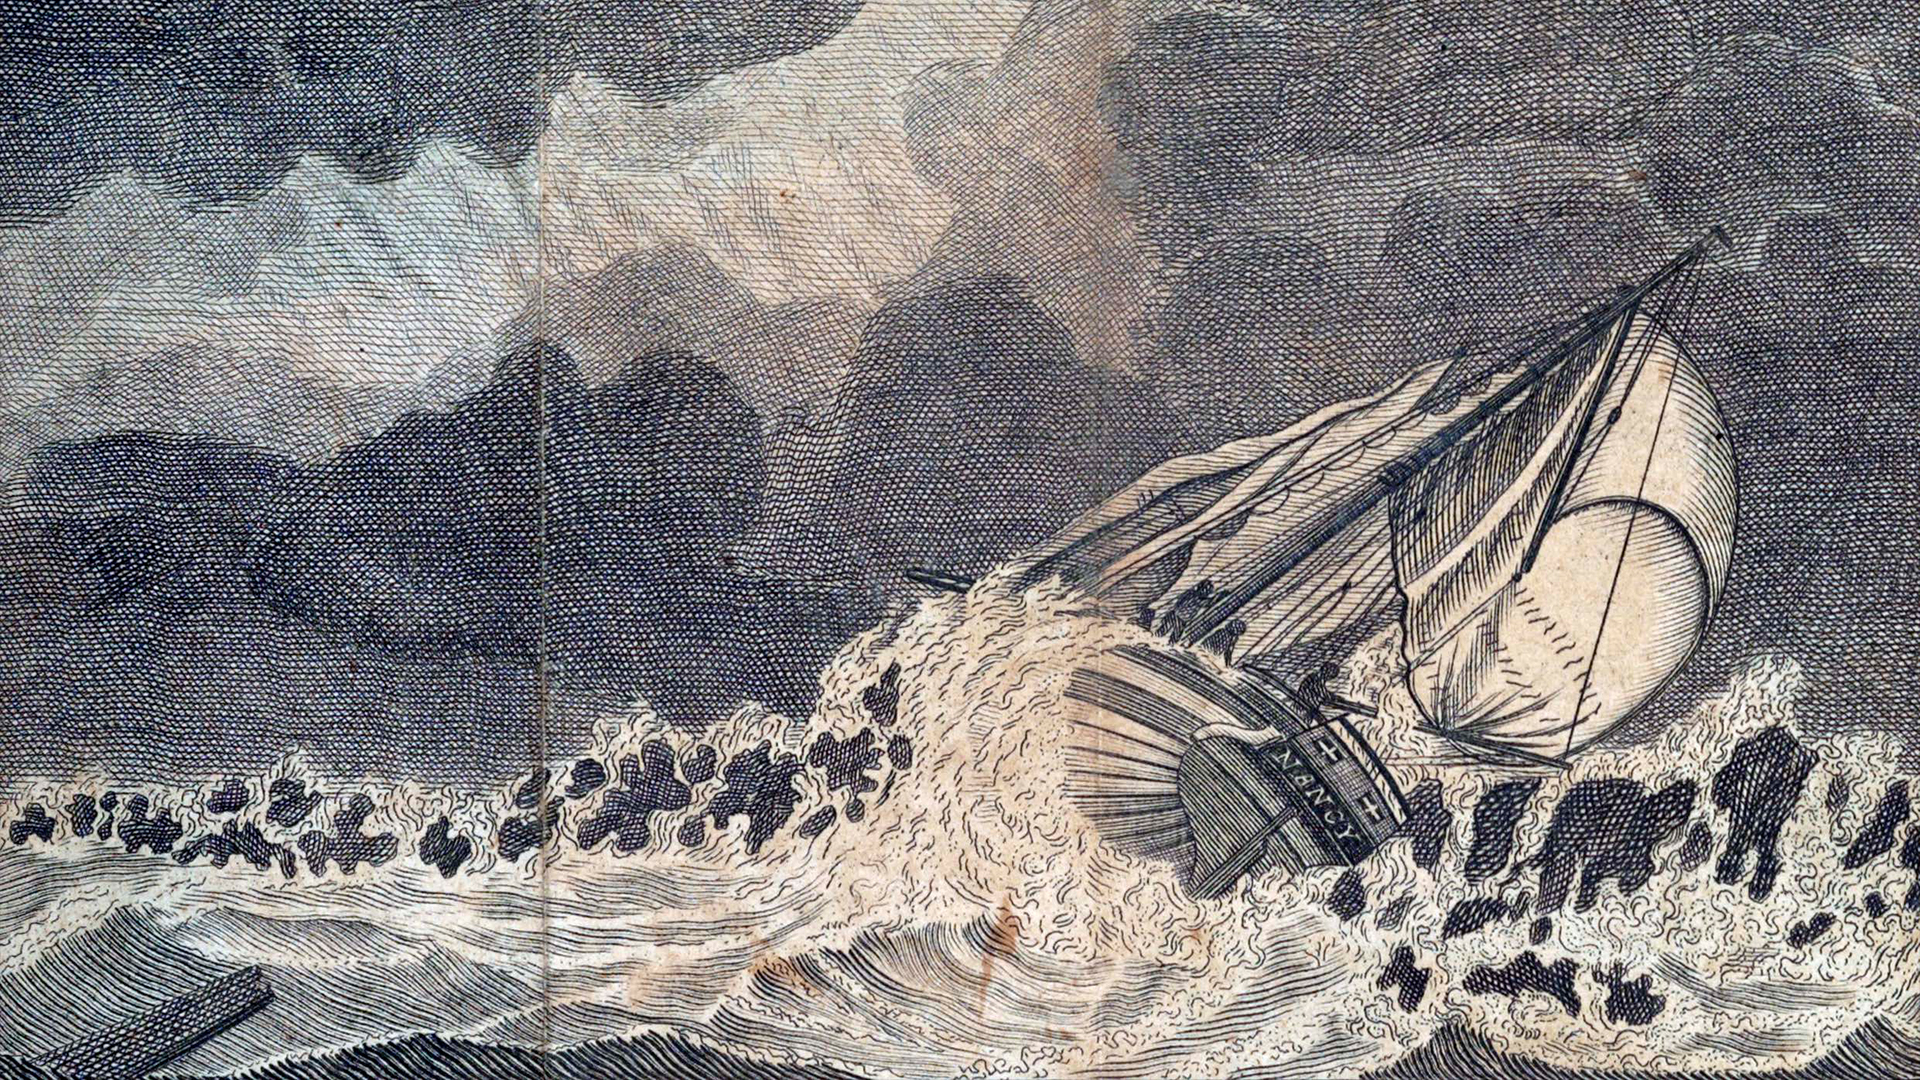 Картина на робски кораб, който потъва по време на буря.